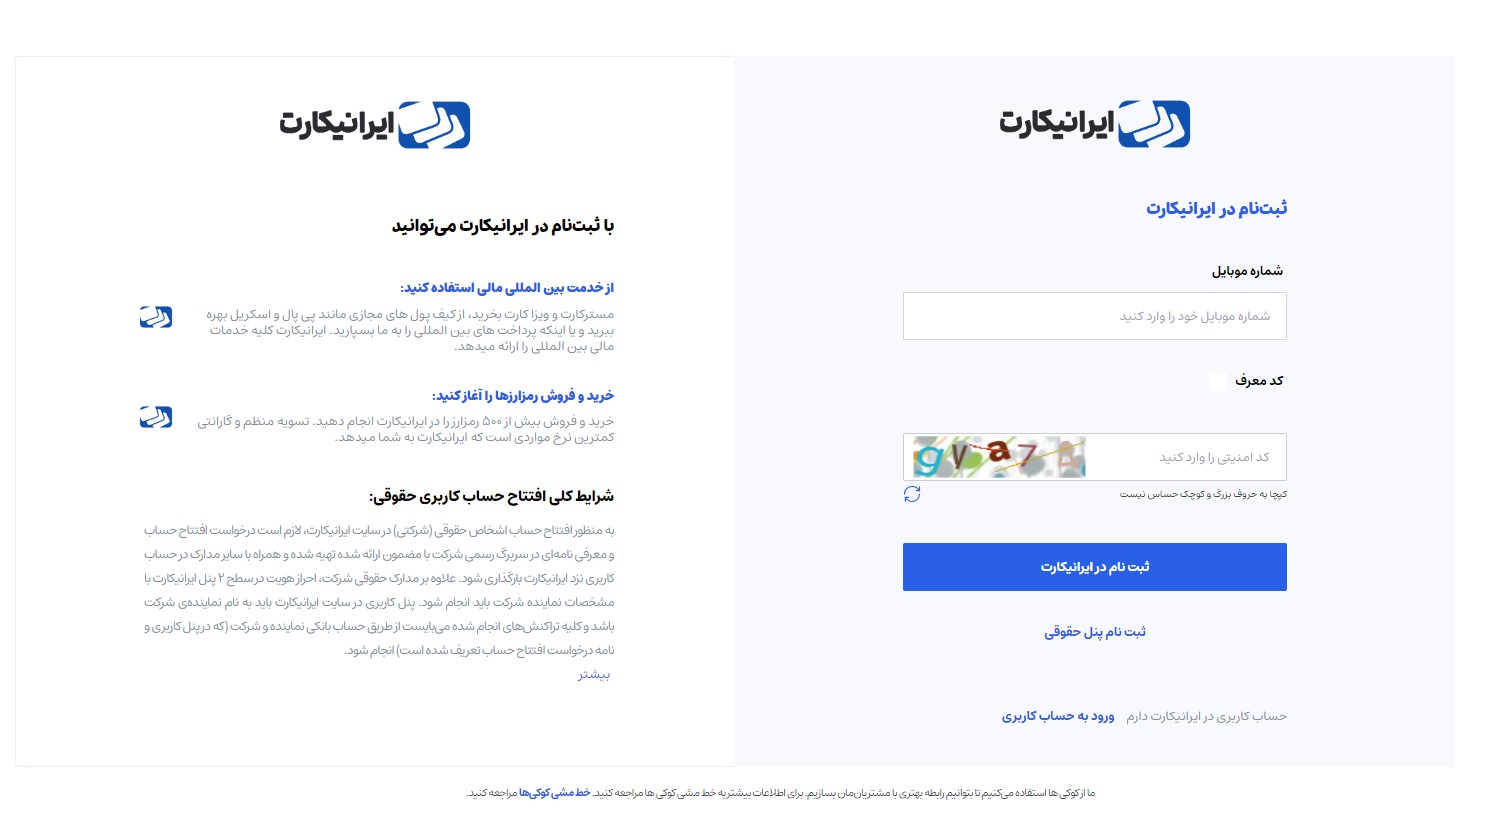 ثبت نام و احراز هویت در صرافی ایرانیکارت